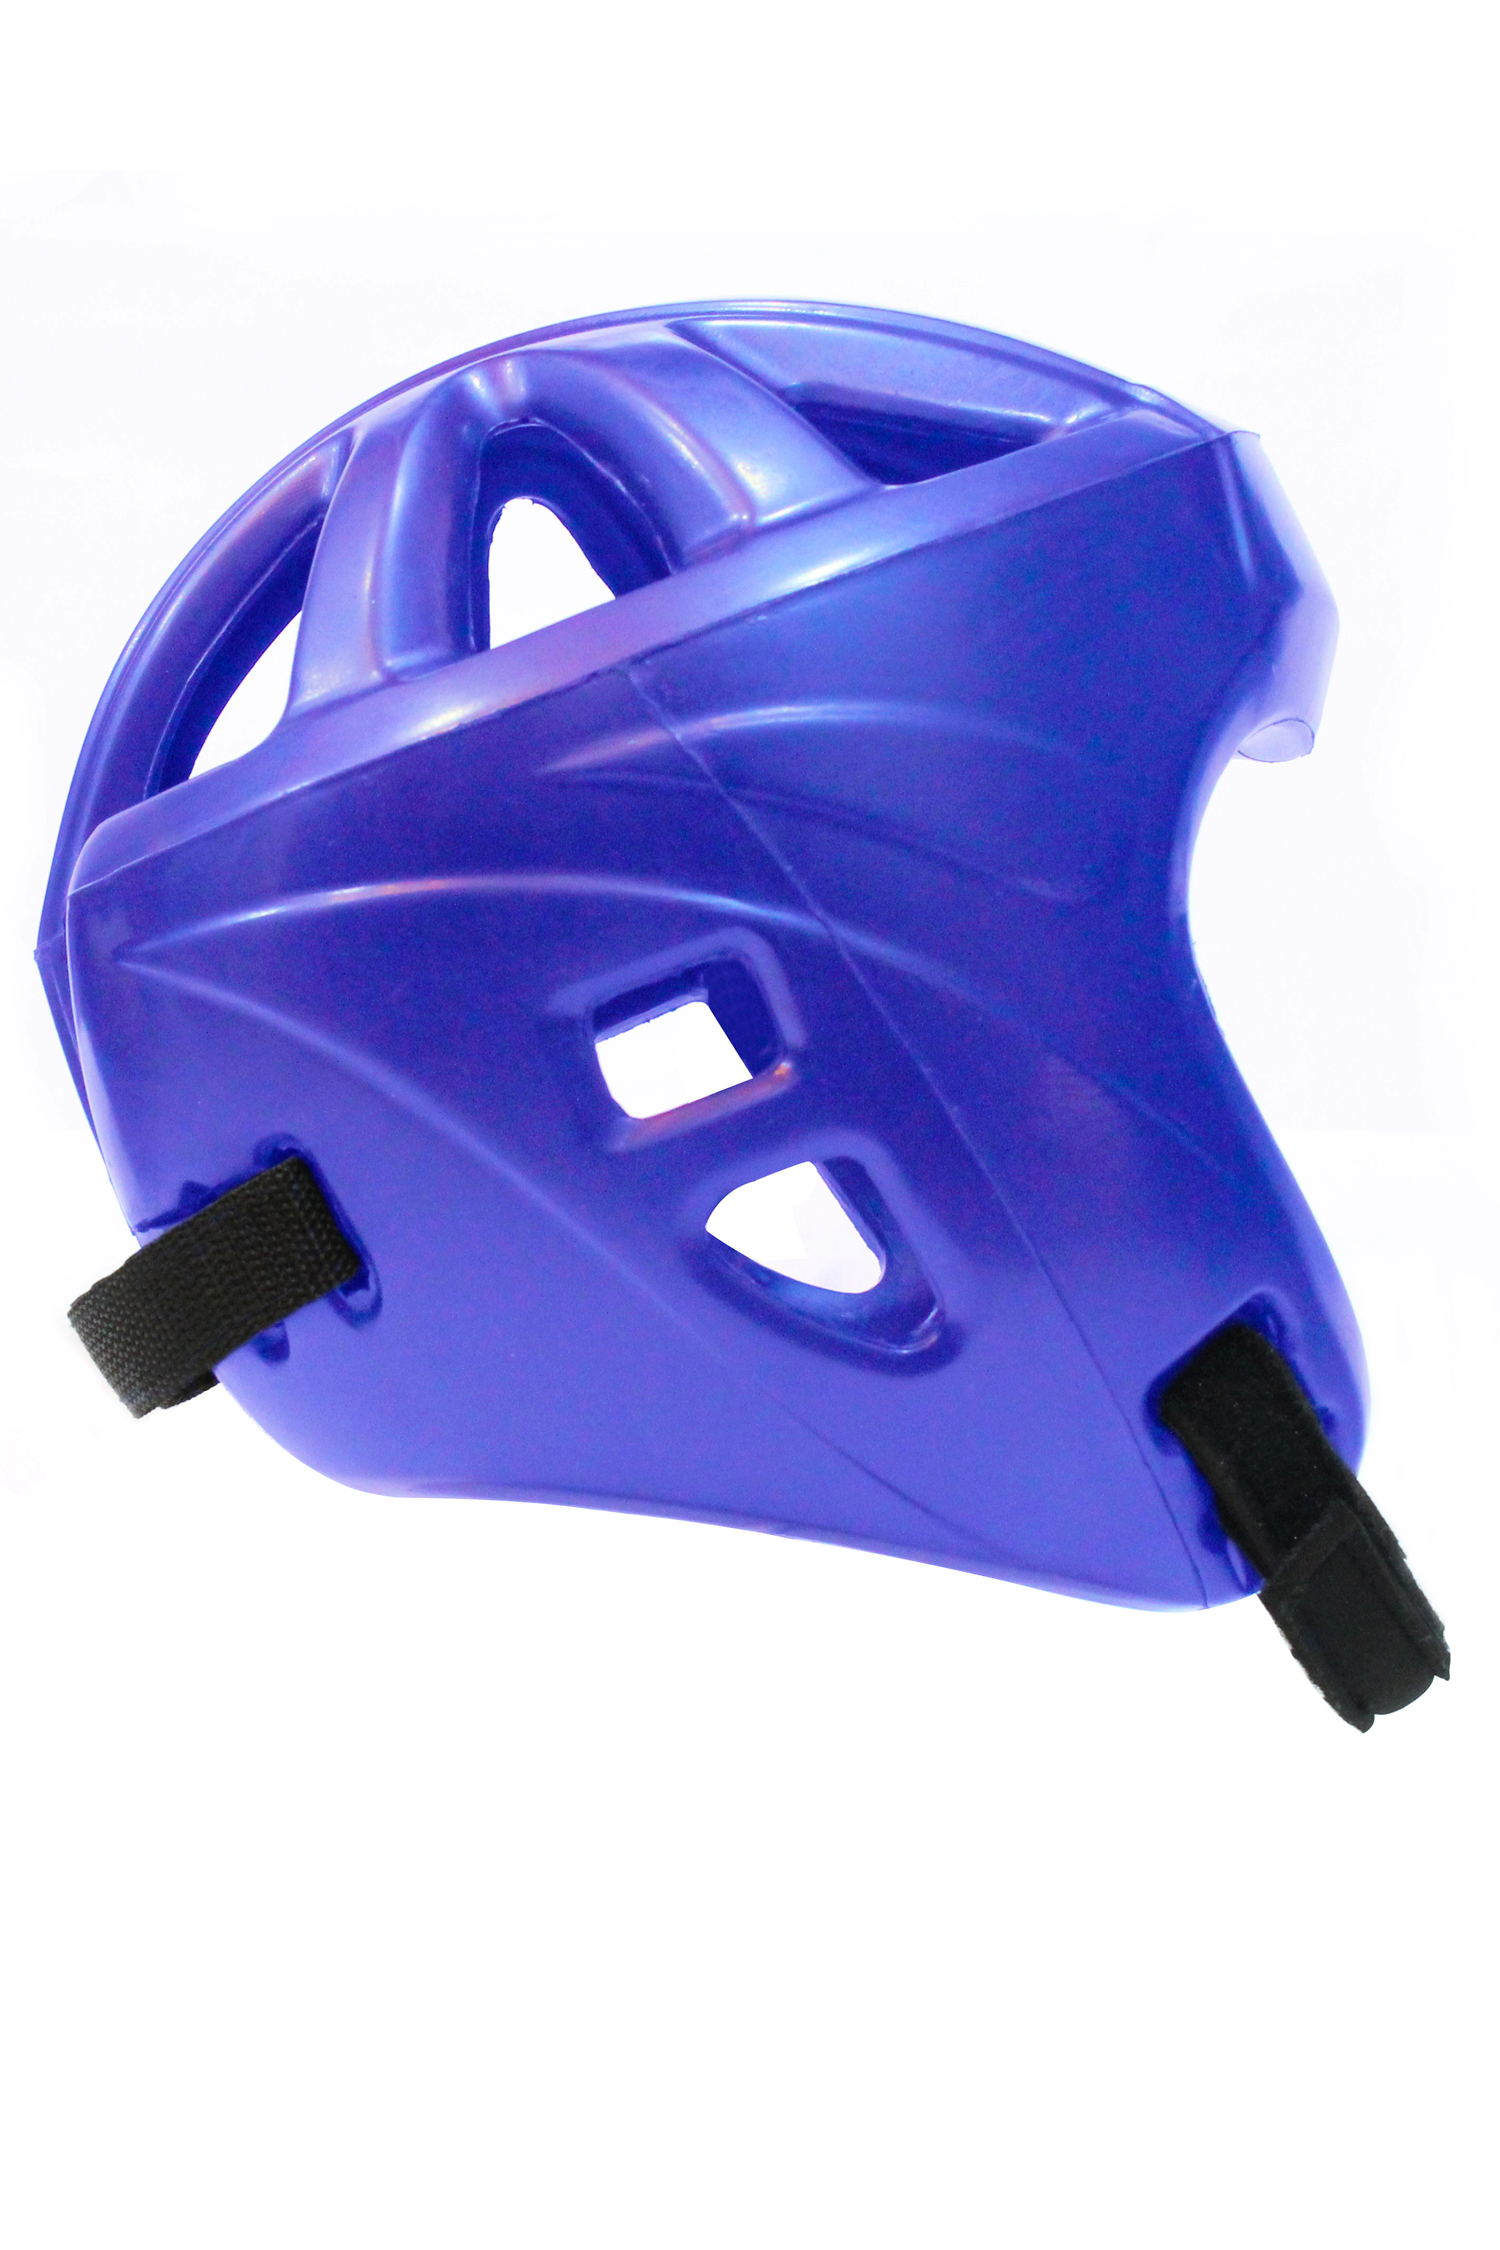 Proveedor de casco de nuevo estilo de poliuretano PU de China Fábrica de casco de boxeo ligero de China Fabricante de casco de boxeo anti-impacto de China